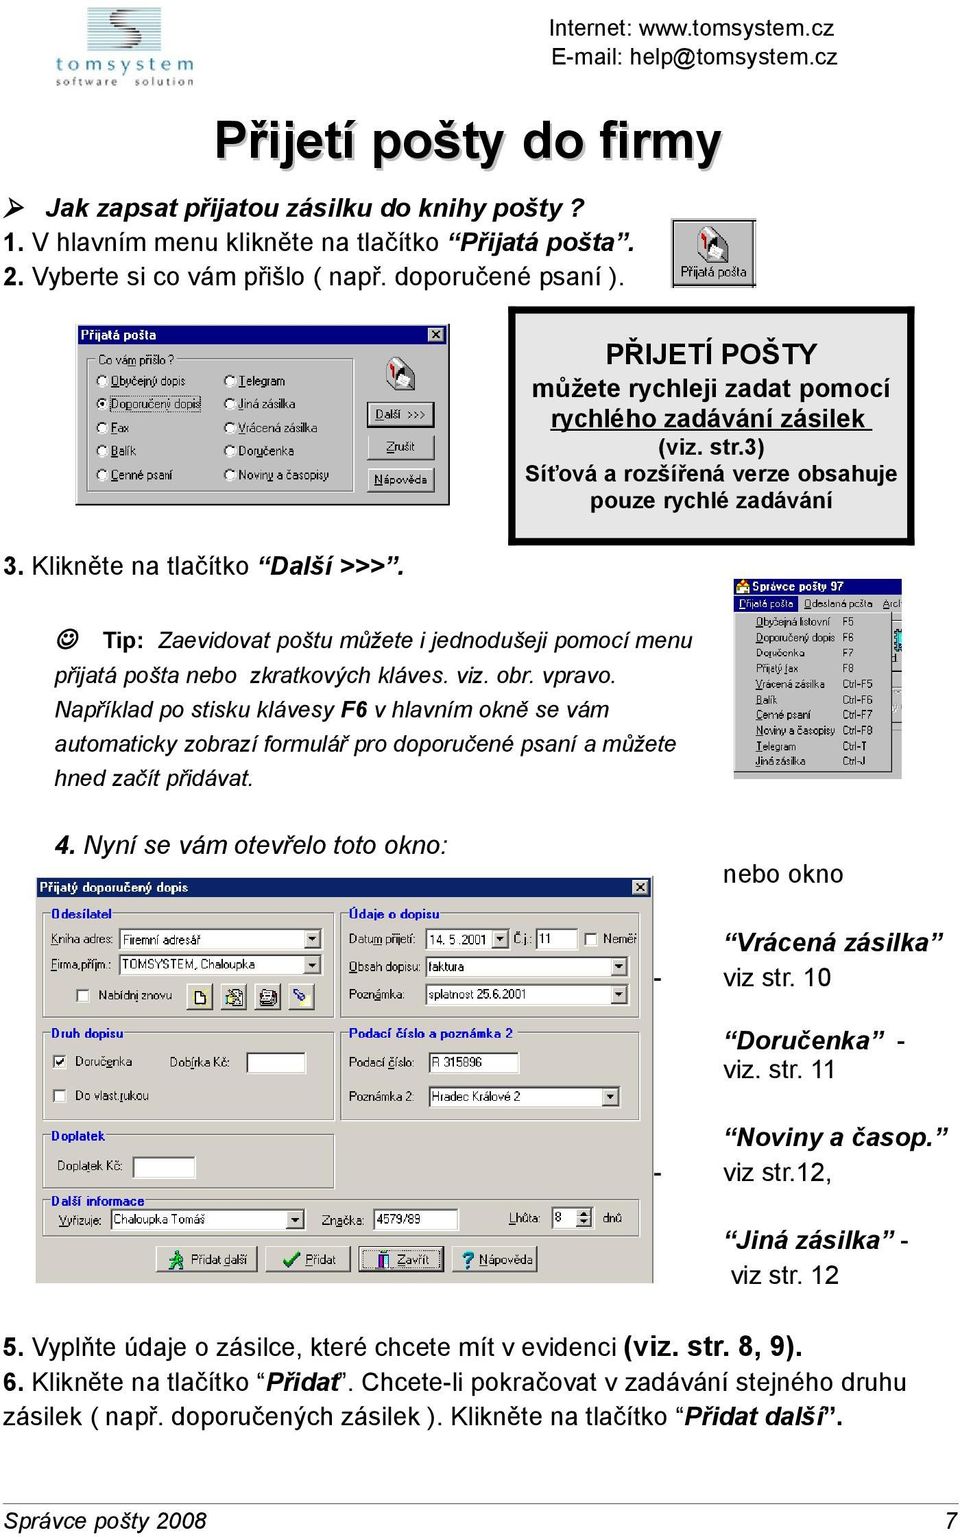 J Tip: Zaevidovat poštu můžete i jednodušeji pomocí menu přijatá pošta nebo zkratkových kláves. viz. obr. vpravo.